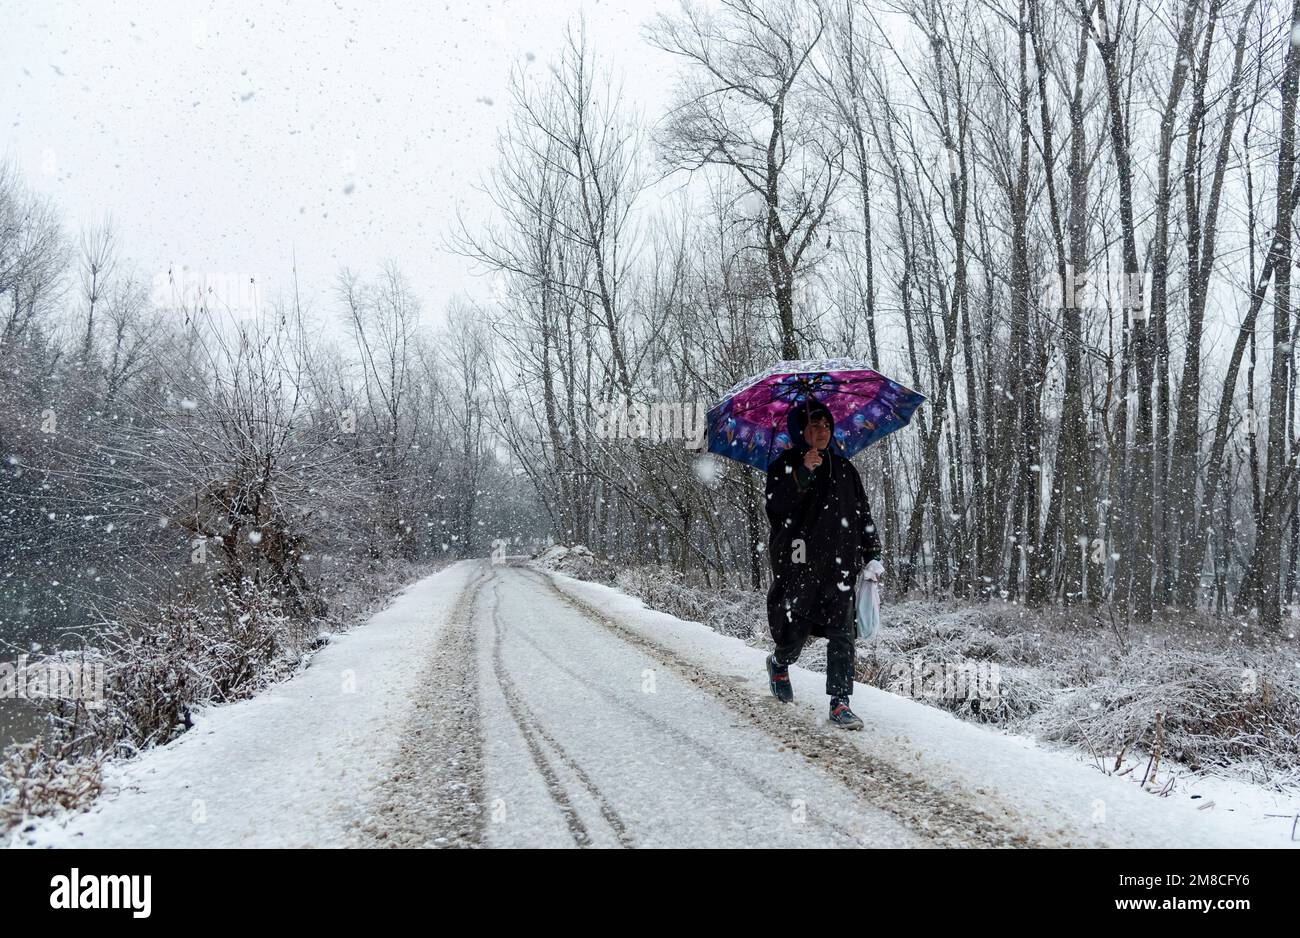 Un ragazzo con un ombrello cammina lungo una strada innevata durante le nevicate. Il Kashmir ha ricevuto nevicate fresche, con le cali più alte della valle che hanno ricevuto nevicate da moderate a pesanti e nevicate da leggere a moderate in pianura, causando una visibilità distruttiva. Questo ha influito sulle operazioni di volo insieme alla chiusura dell'autostrada nazionale Srinagar-Jammu. Foto Stock